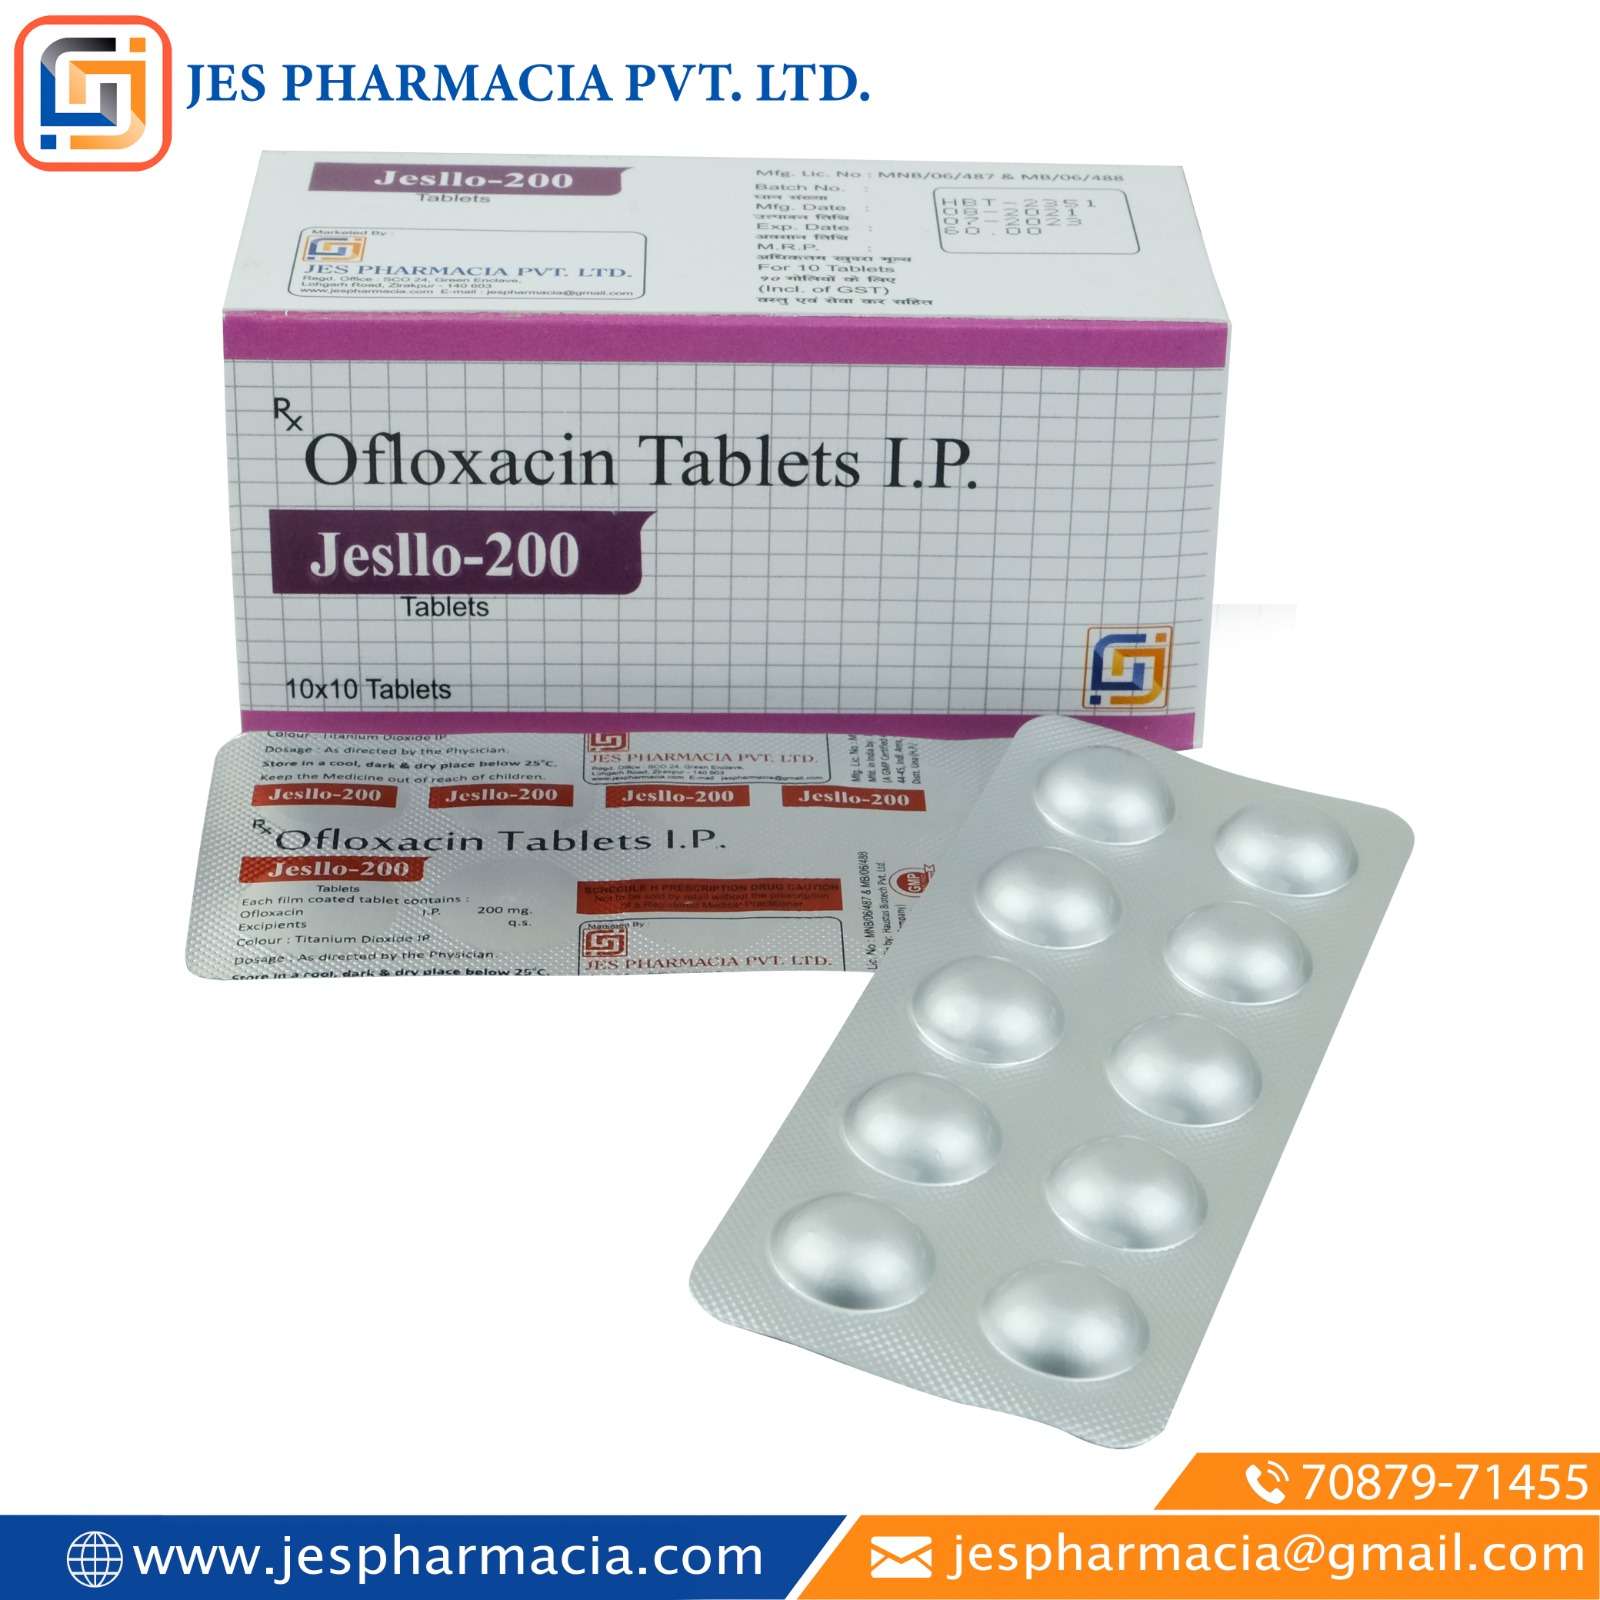 ofloxacin-200 mg tablet